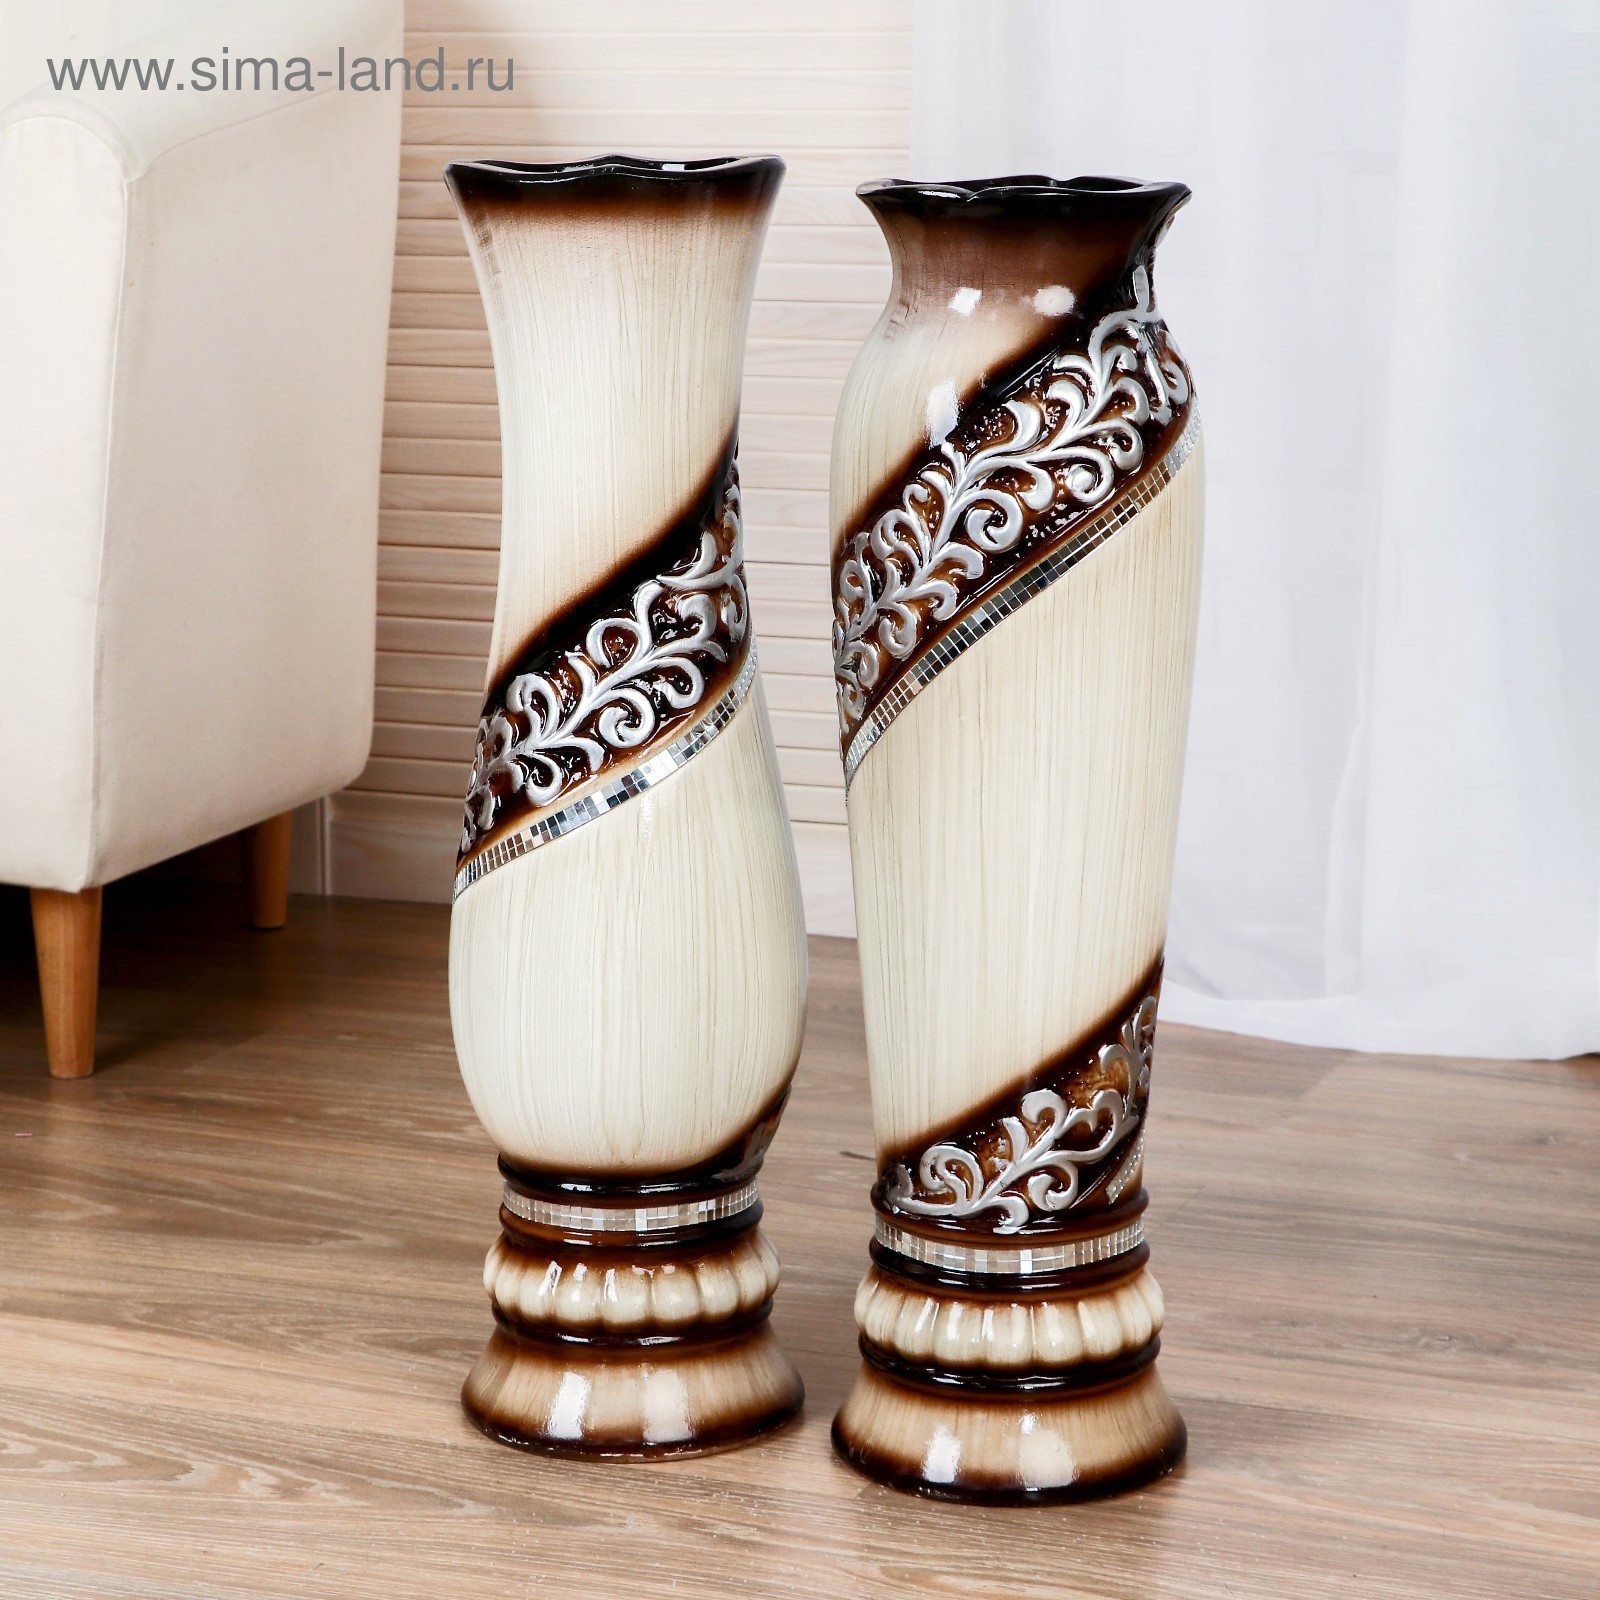 Керамическая ваза напольная купить. Ваза напольная Ампир 4731886. Керамические напольные вазы. Ваза керамическая напольная. Красивые напольные вазы.